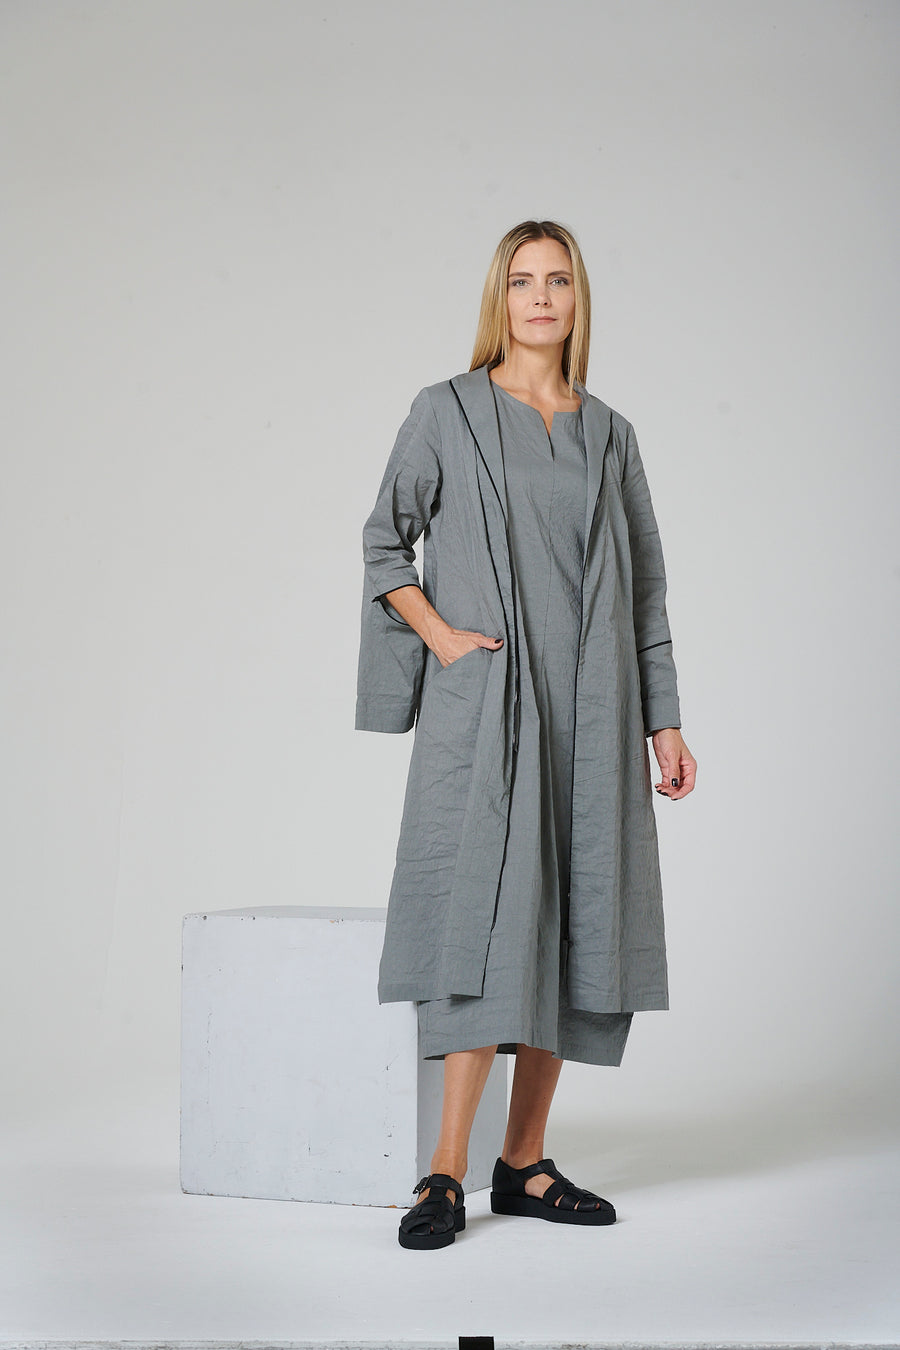 Dress (coat dress) made of linen blend fabric with elastane (323k3)